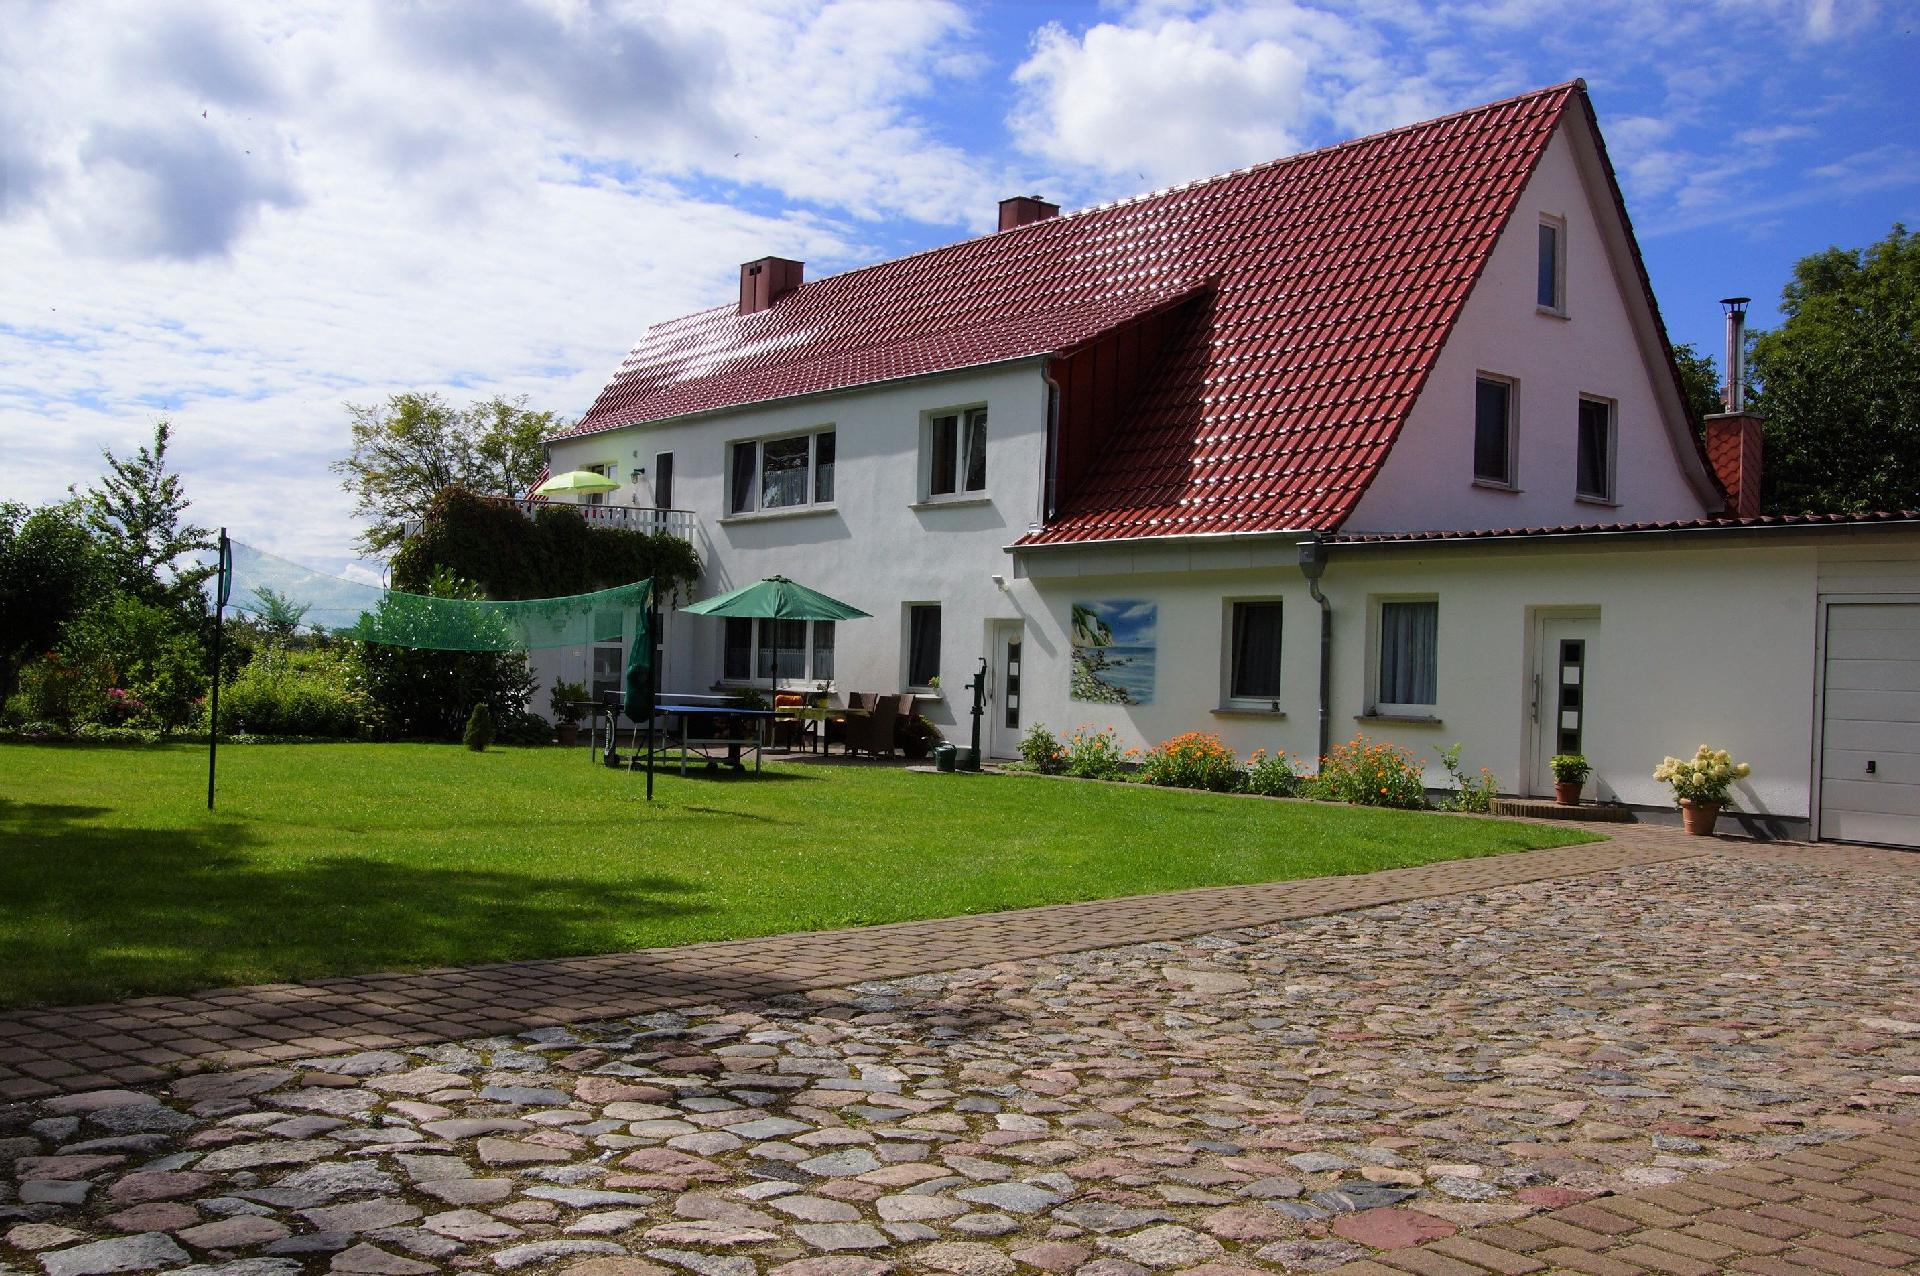 Schöne Wohnung bei Bergen auzf Rügen mit Ferienwohnung  Mecklenburger Ostseeküste